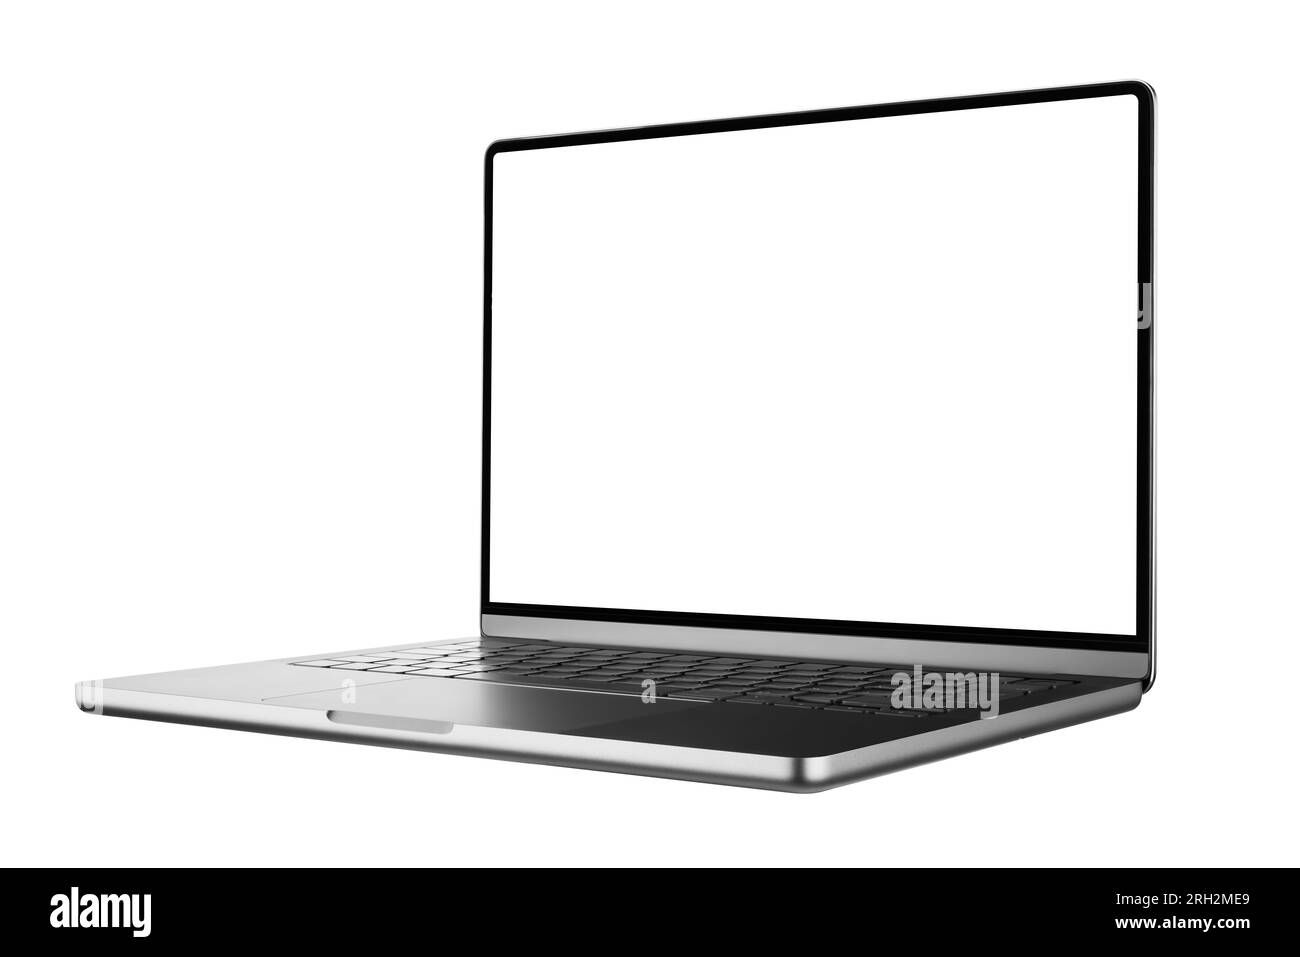 Maquette d'ordinateur portable moderne en trois quarts avec un écran blanc isolé sur un fond blanc, basée sur une photo Studio de haute qualité Banque D'Images